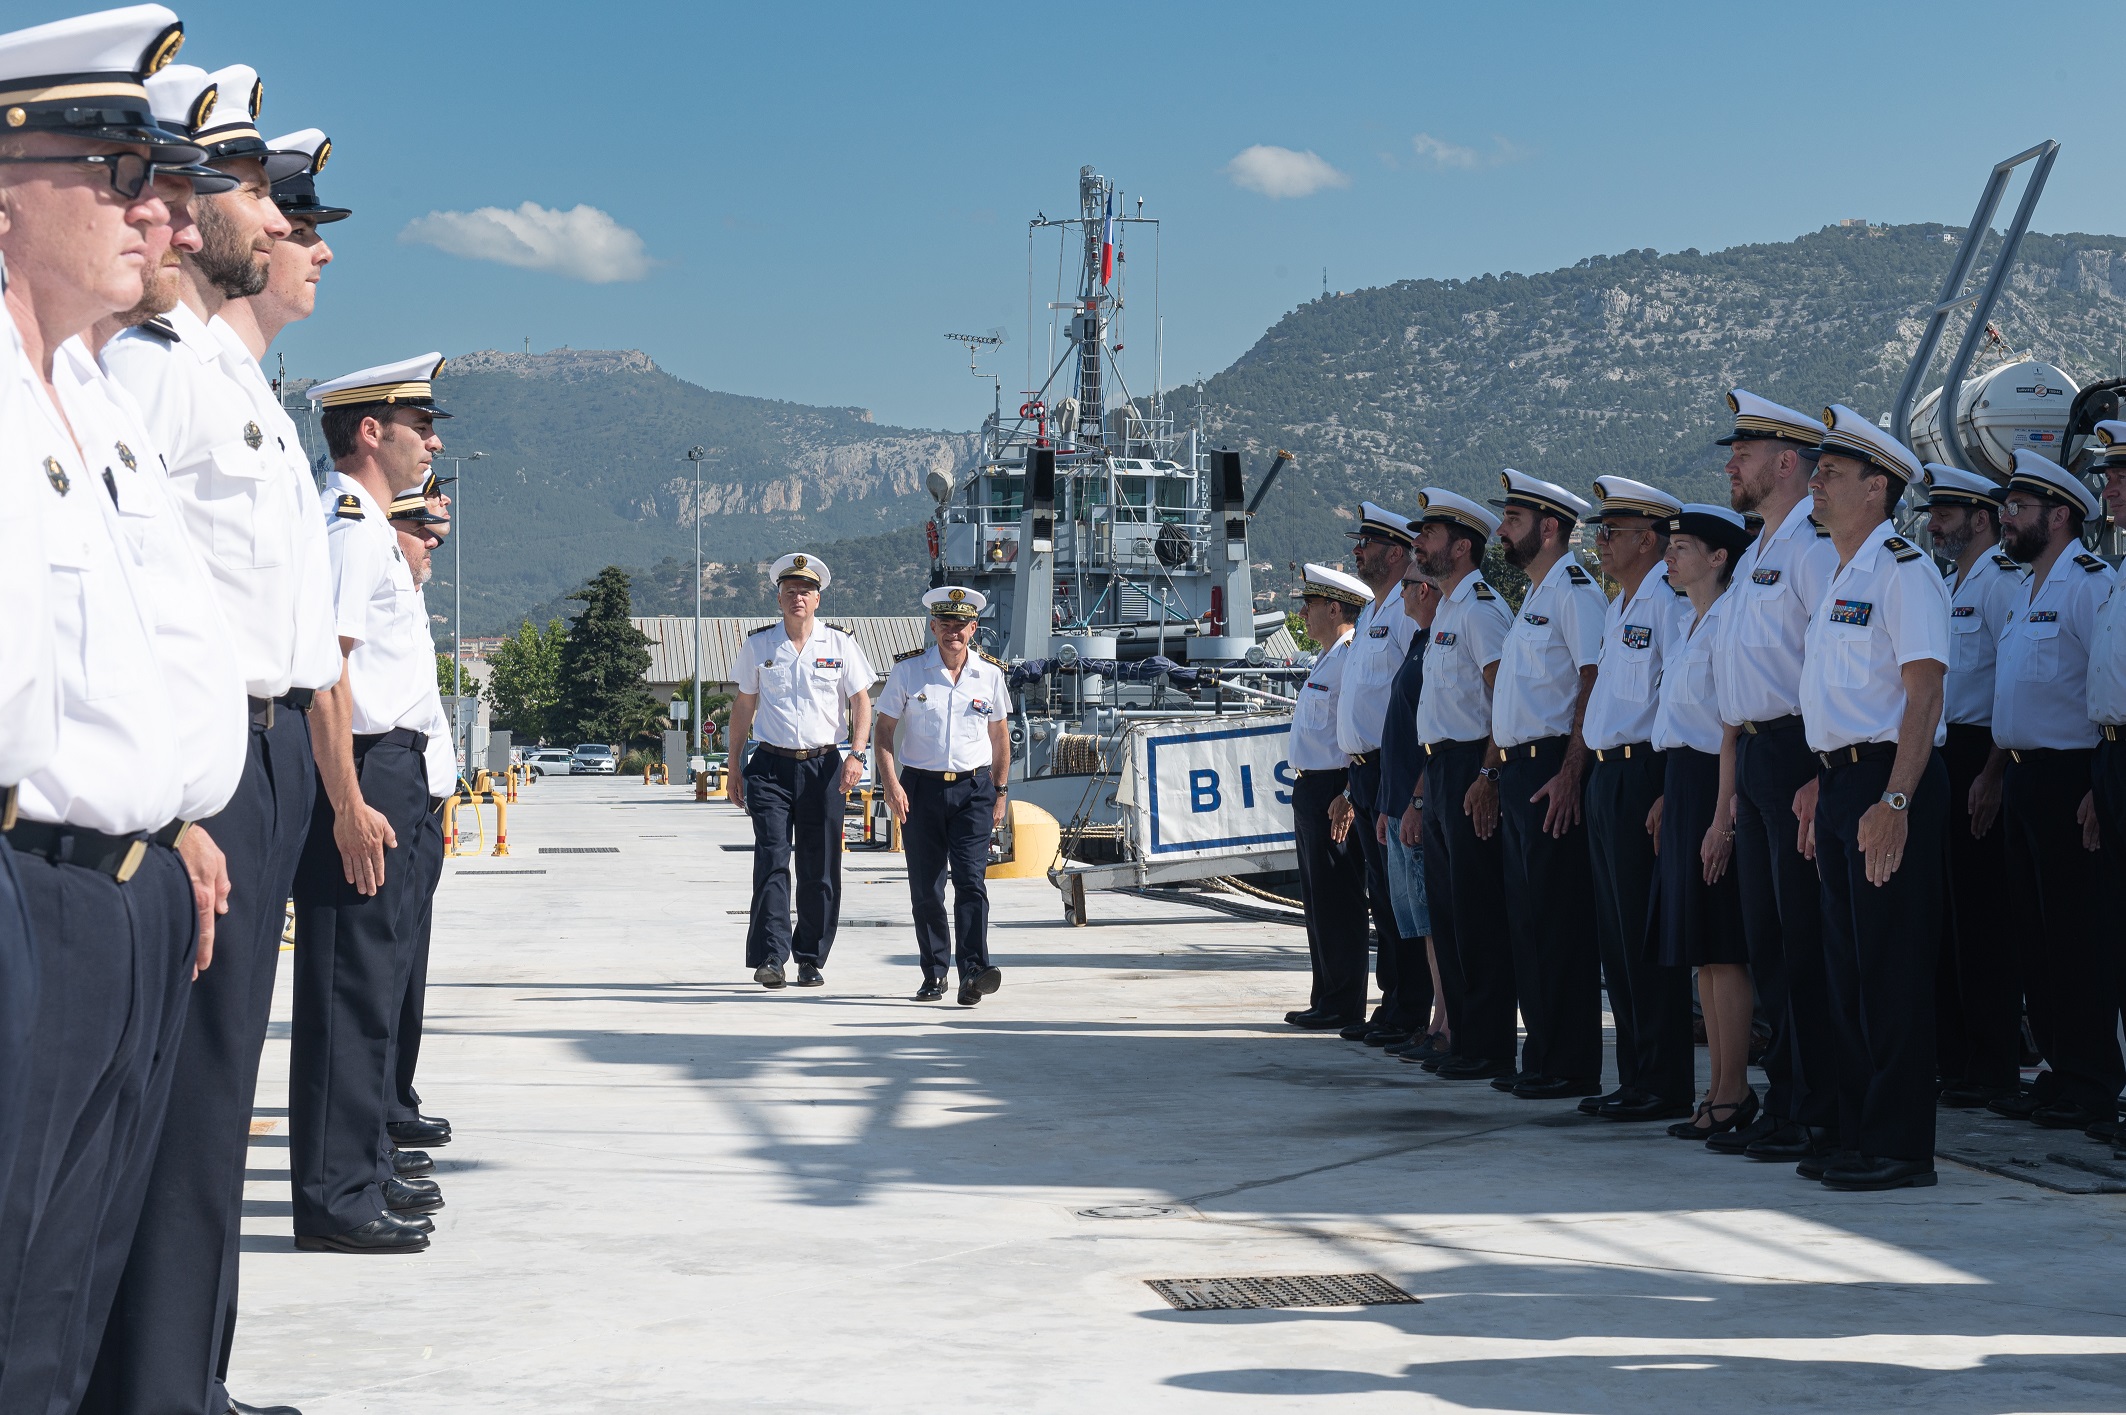  Passage de relais entre deux remorqueurs de la base navale de Toulon